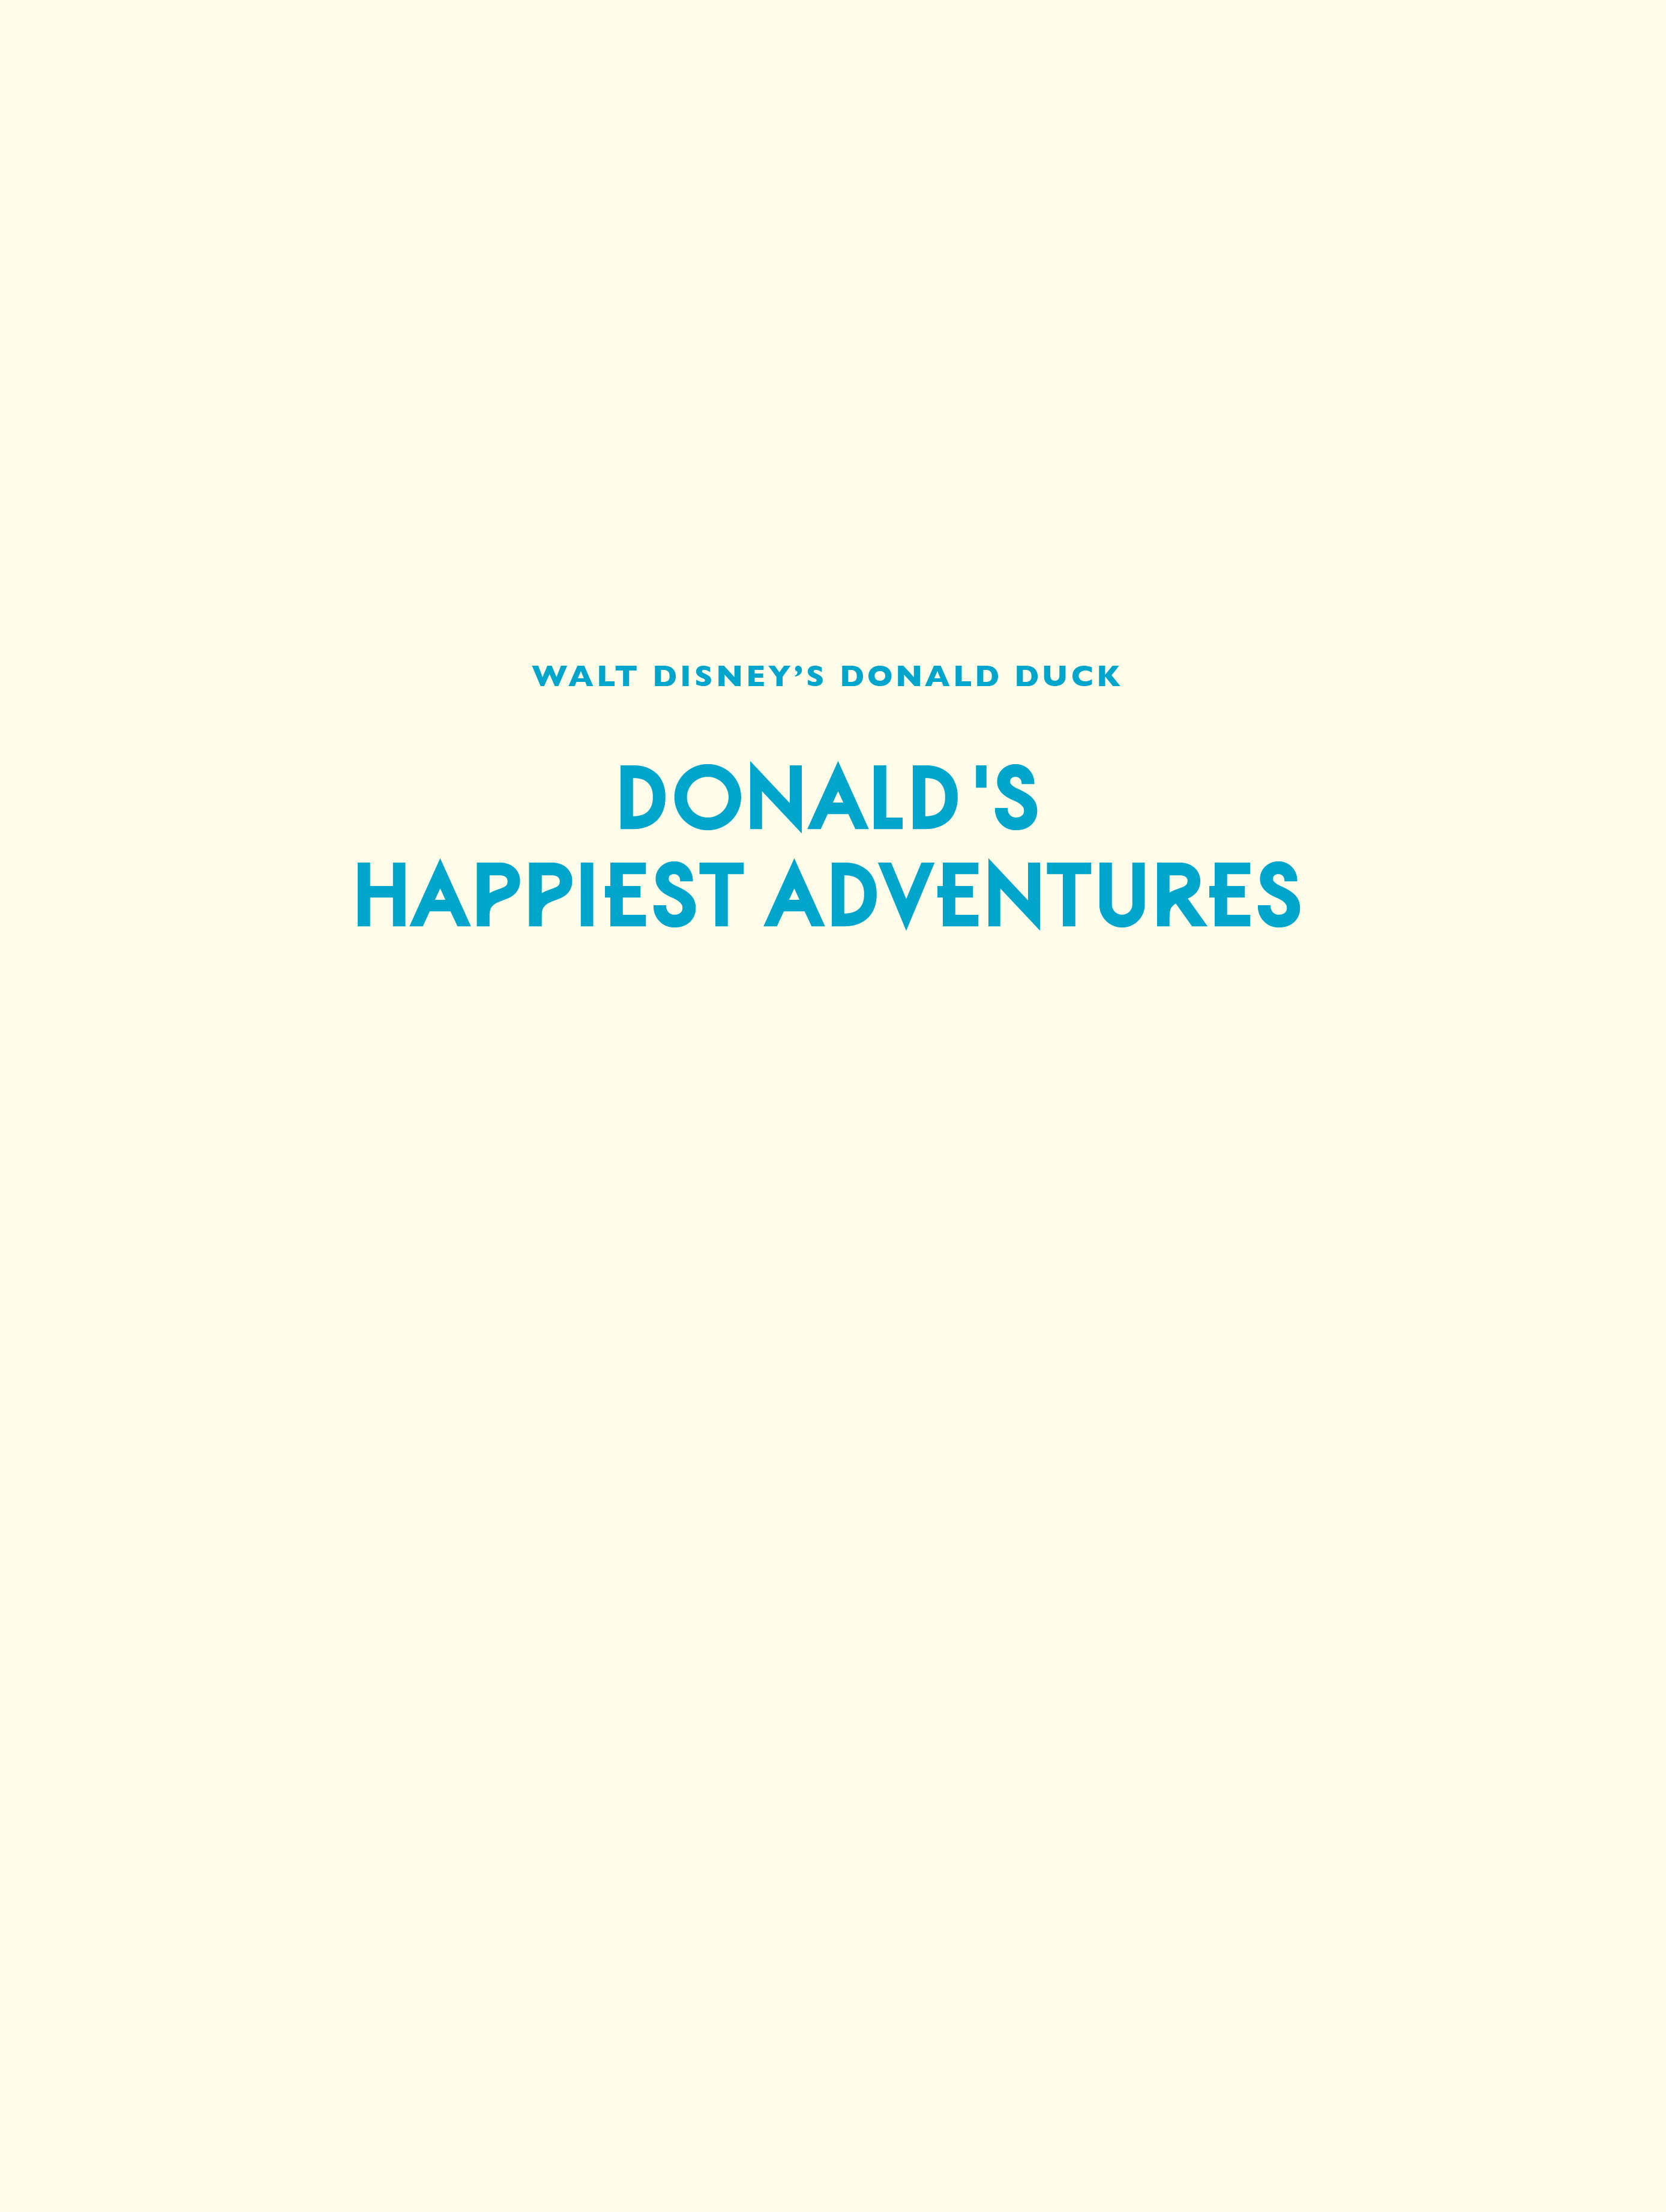 Read online Walt Disney's Donald Duck: Donald's Happiest Adventures comic -  Issue # Full - 2